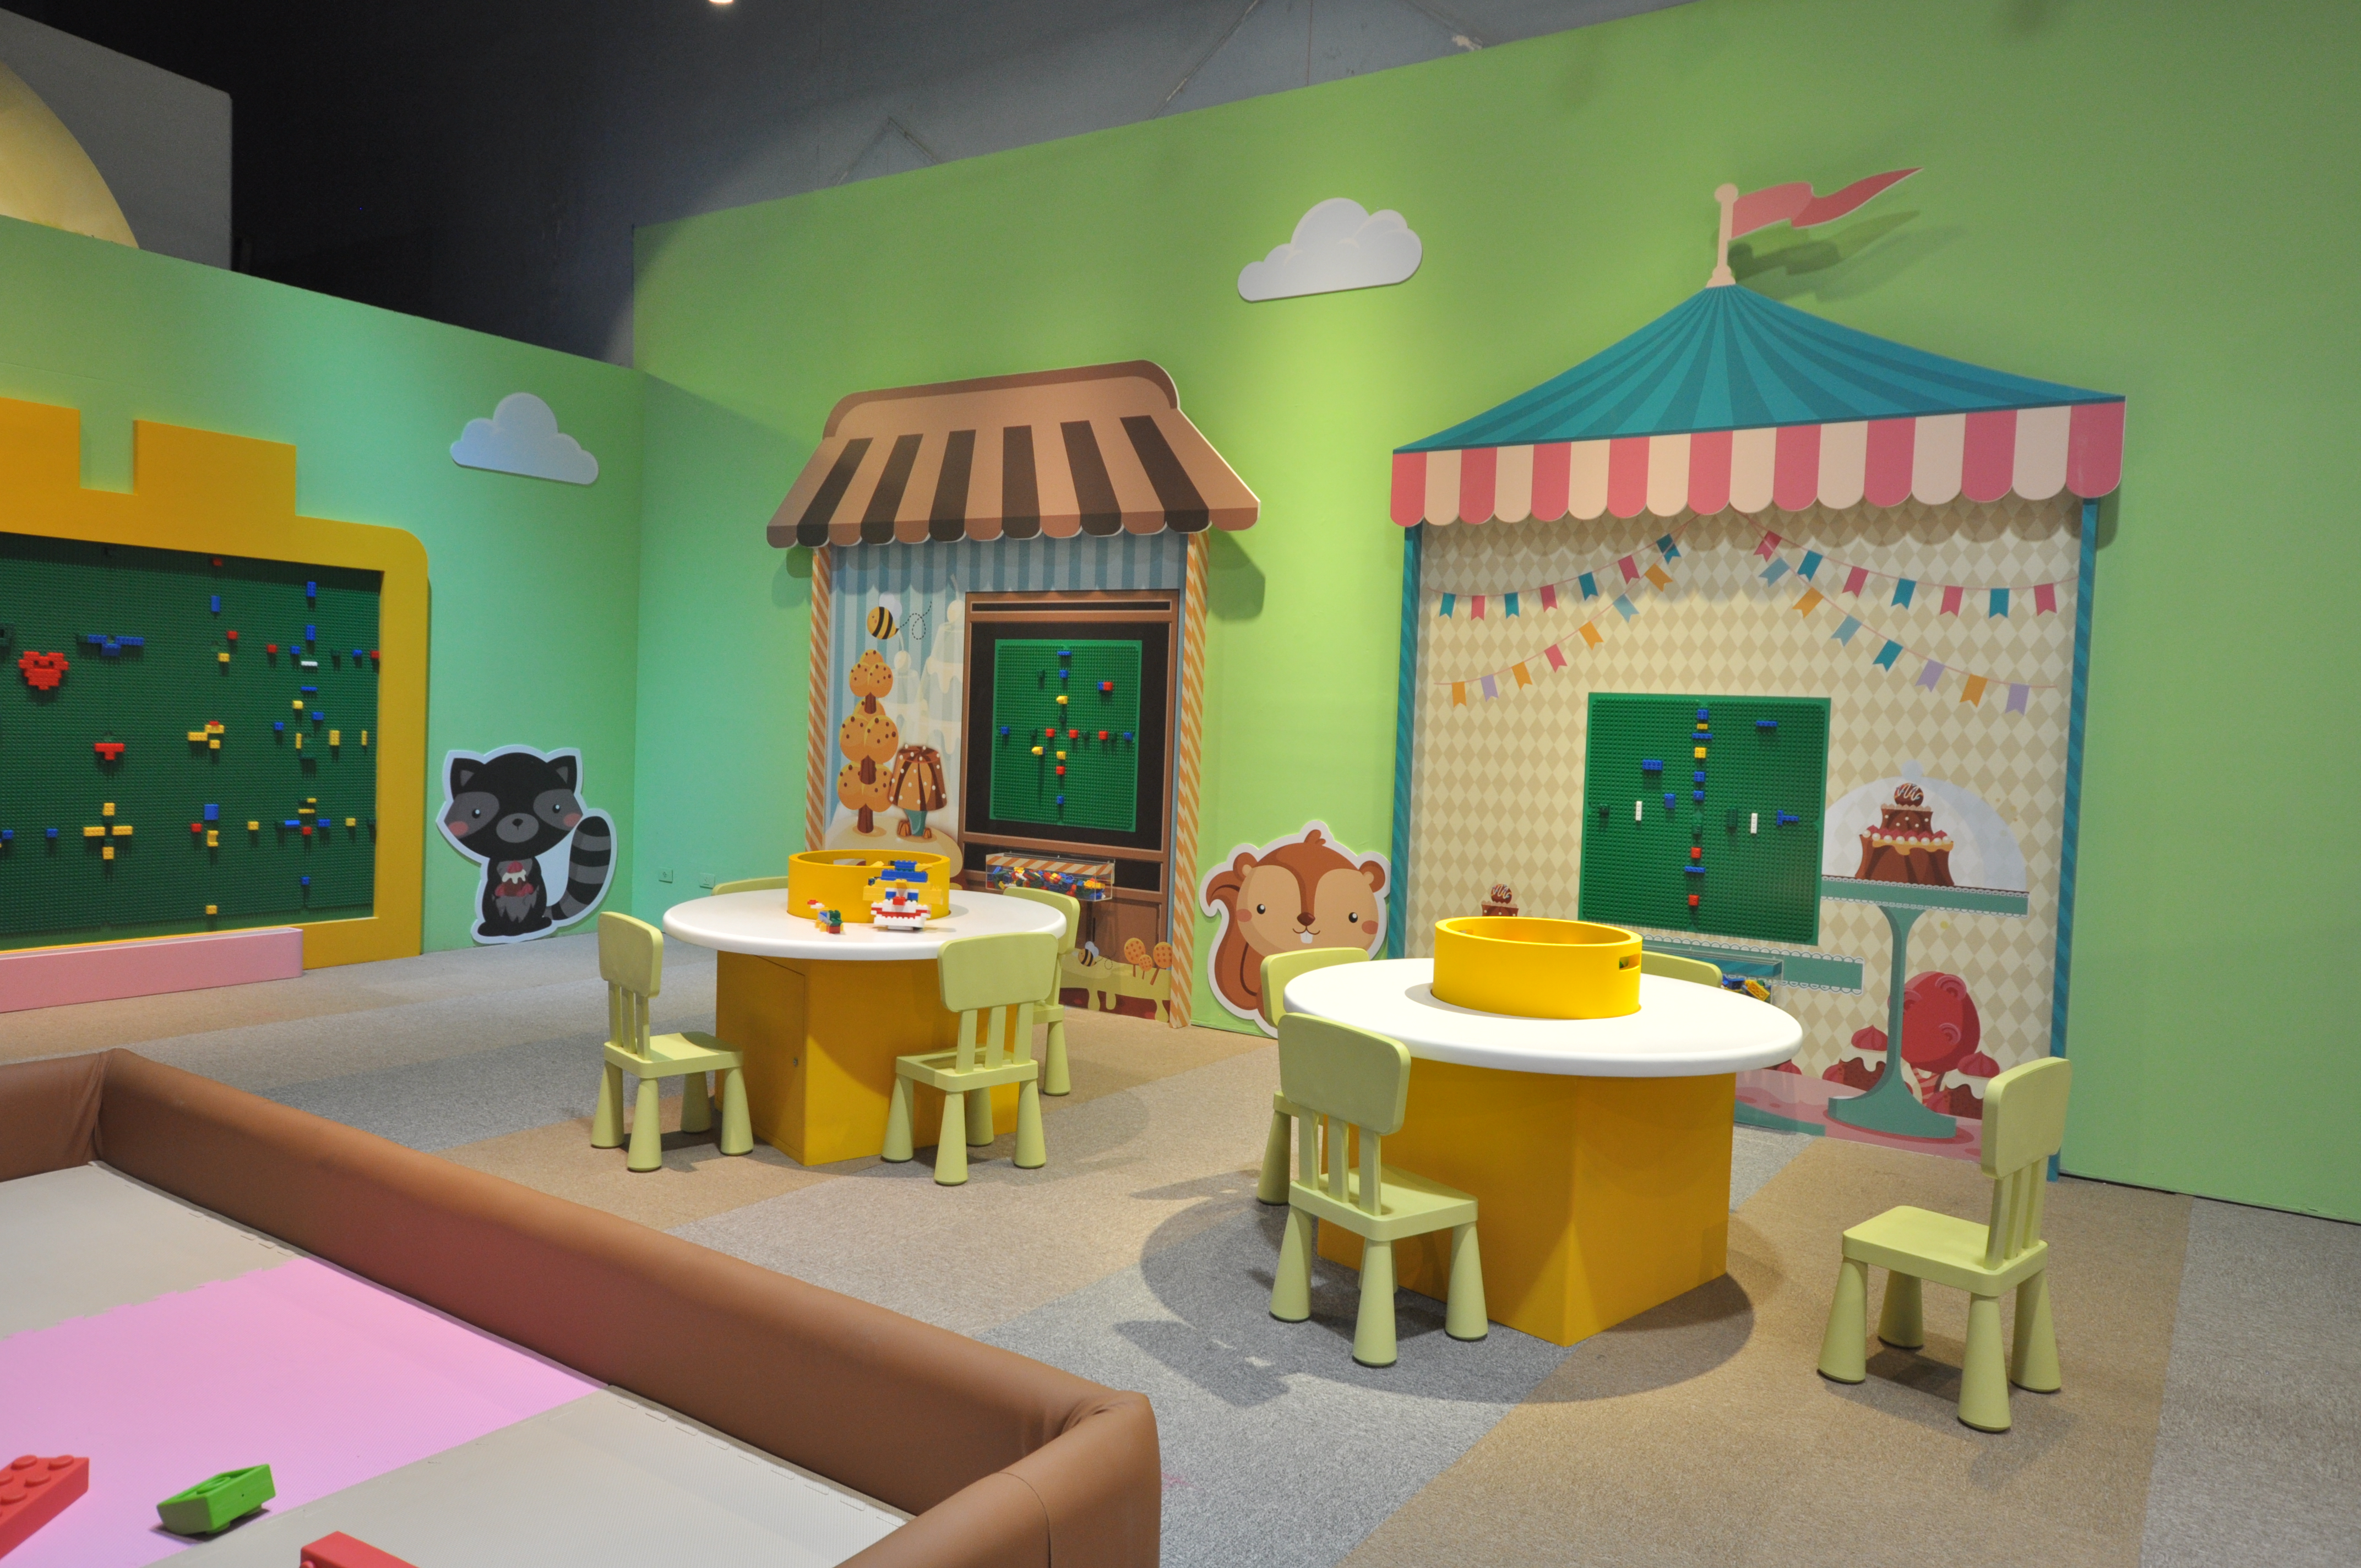 新推出「砌.創.益.遊~兒童積木體驗區」體驗設施